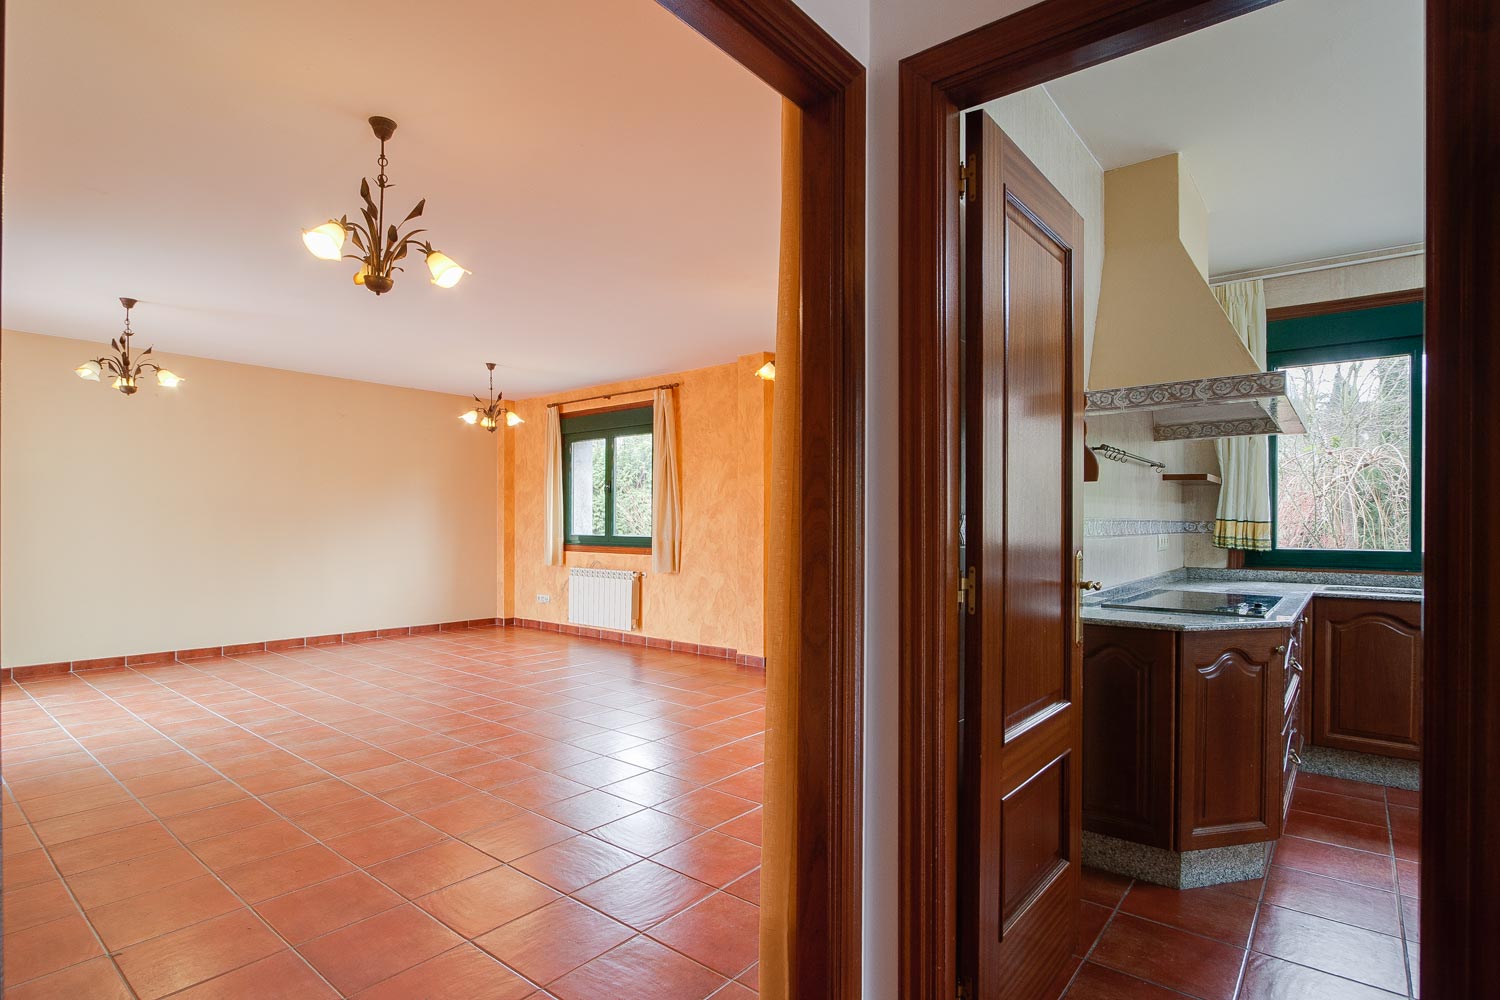 Espacios vacíos_ cocina clásica y salón en vivienda unifamiliar en Bergondo